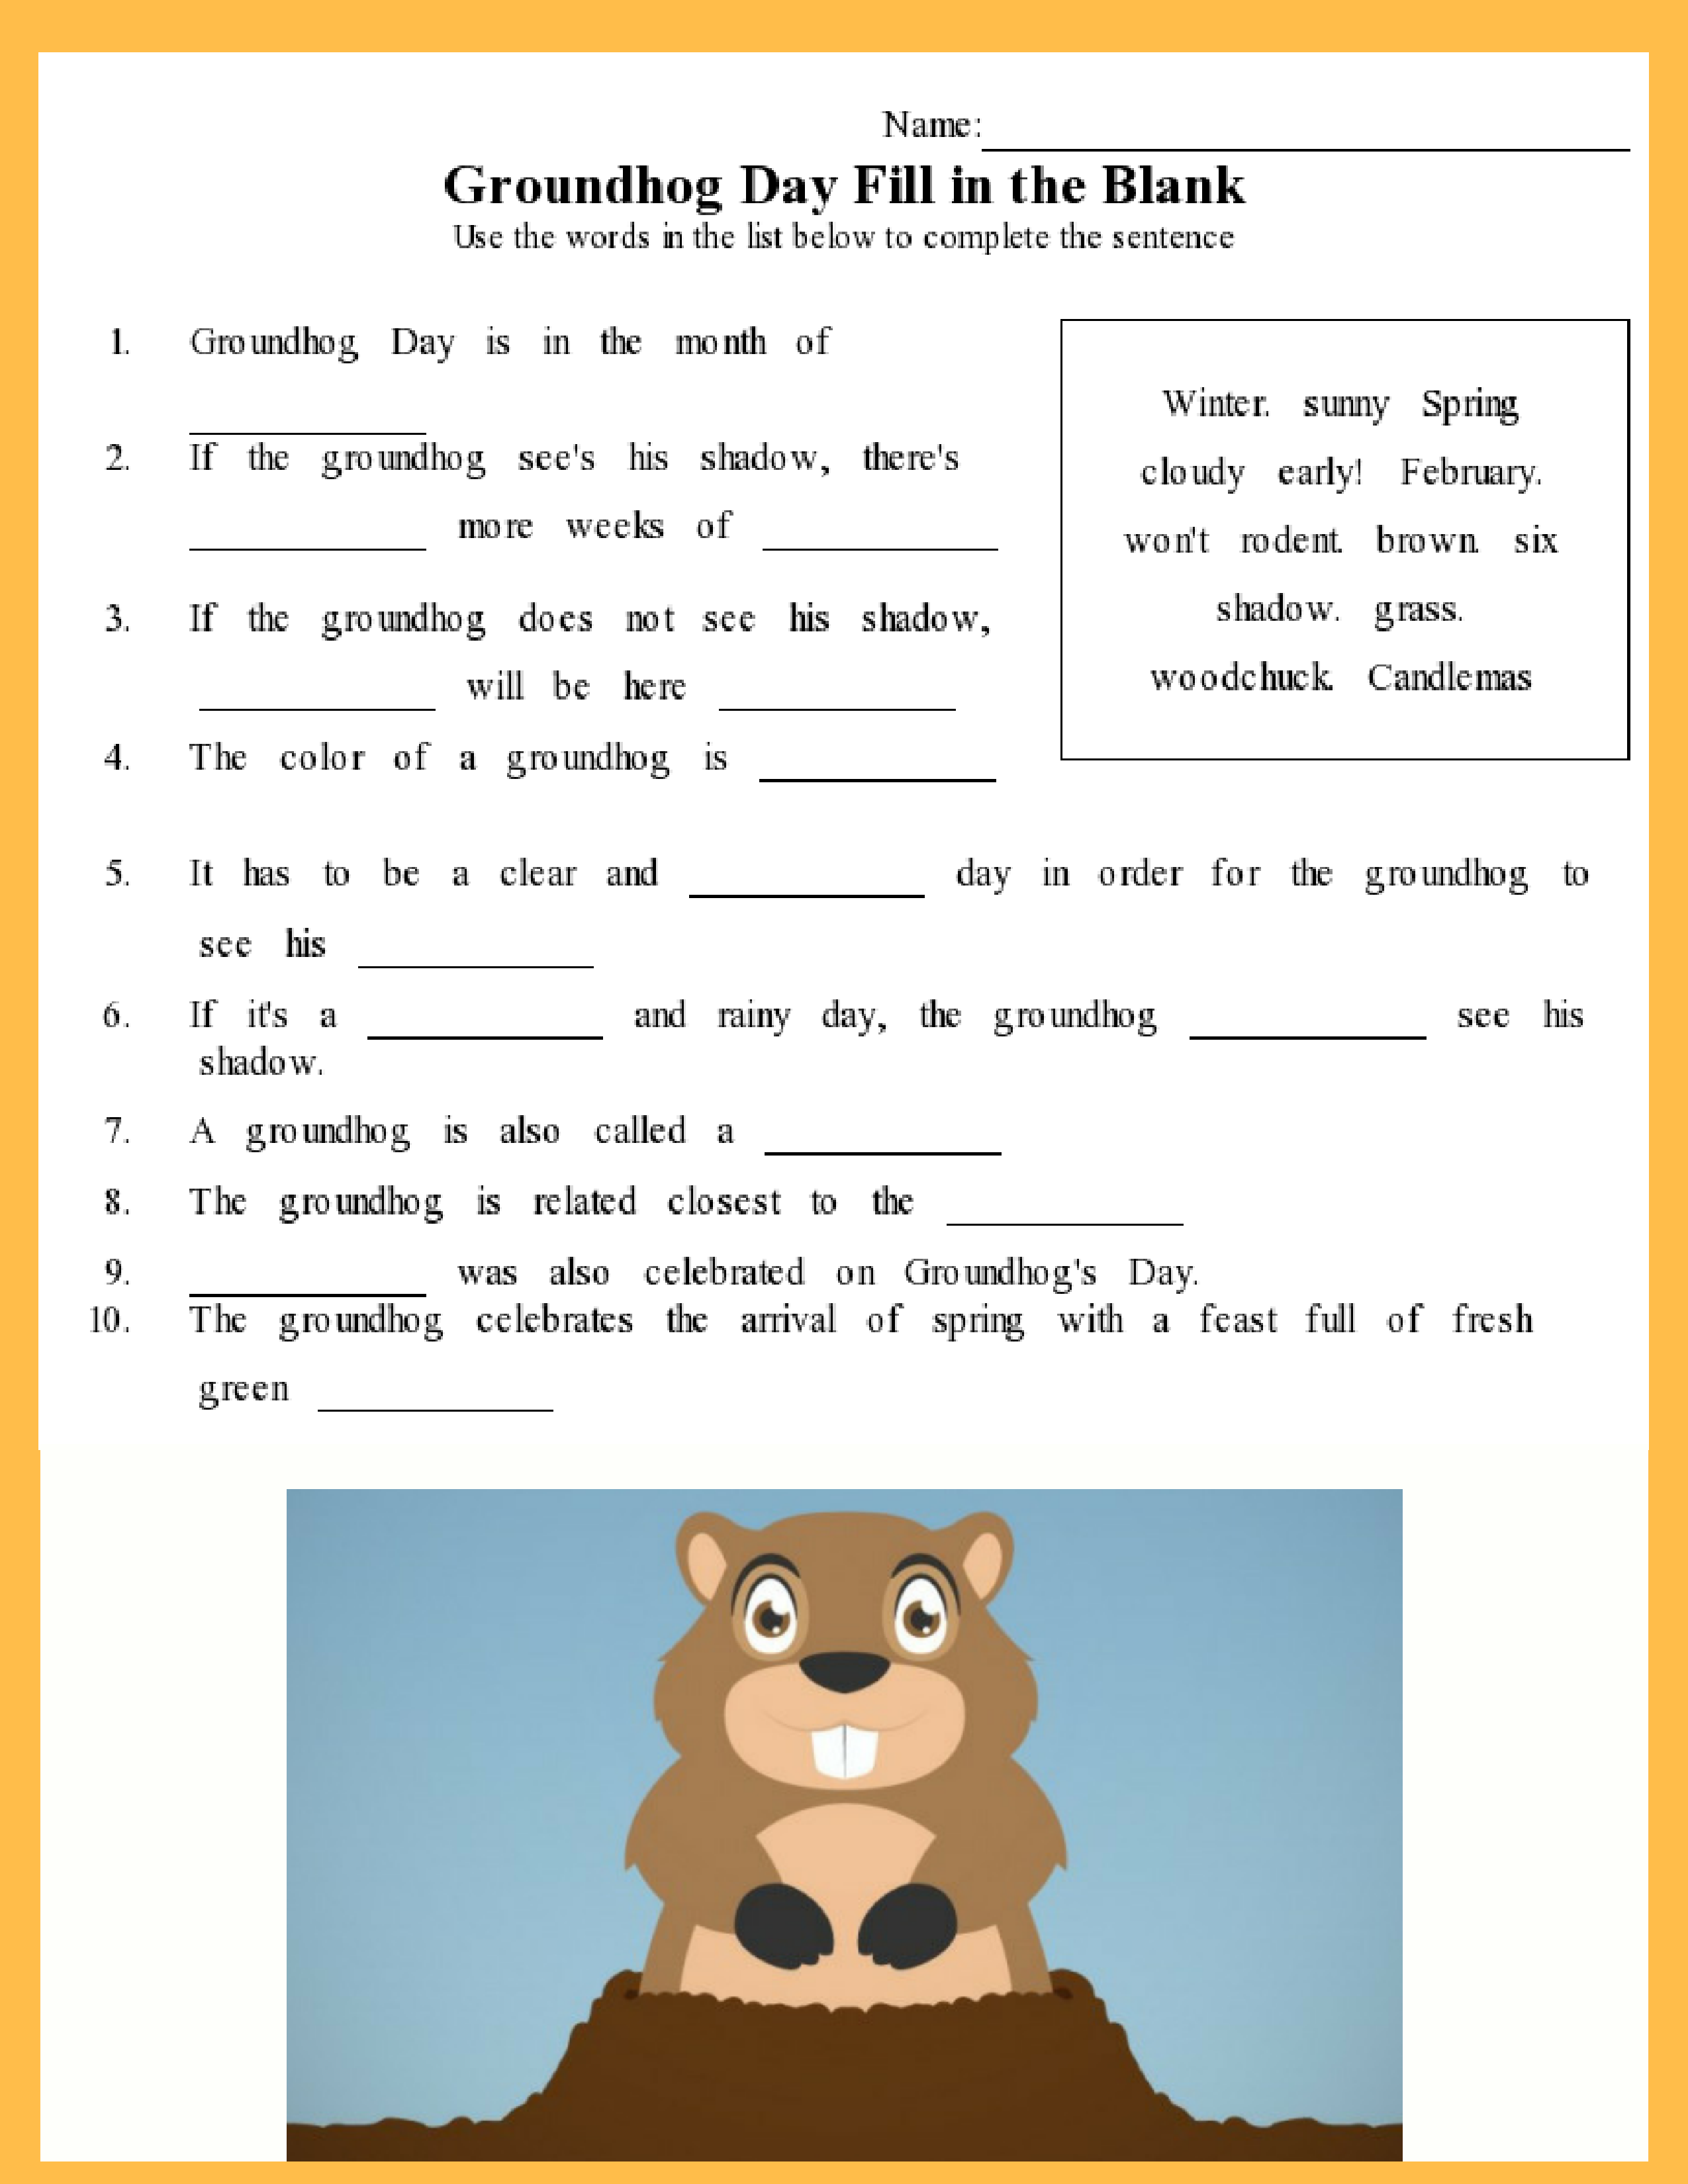 groundhog-day-worksheets-free-printable-printable-worksheets